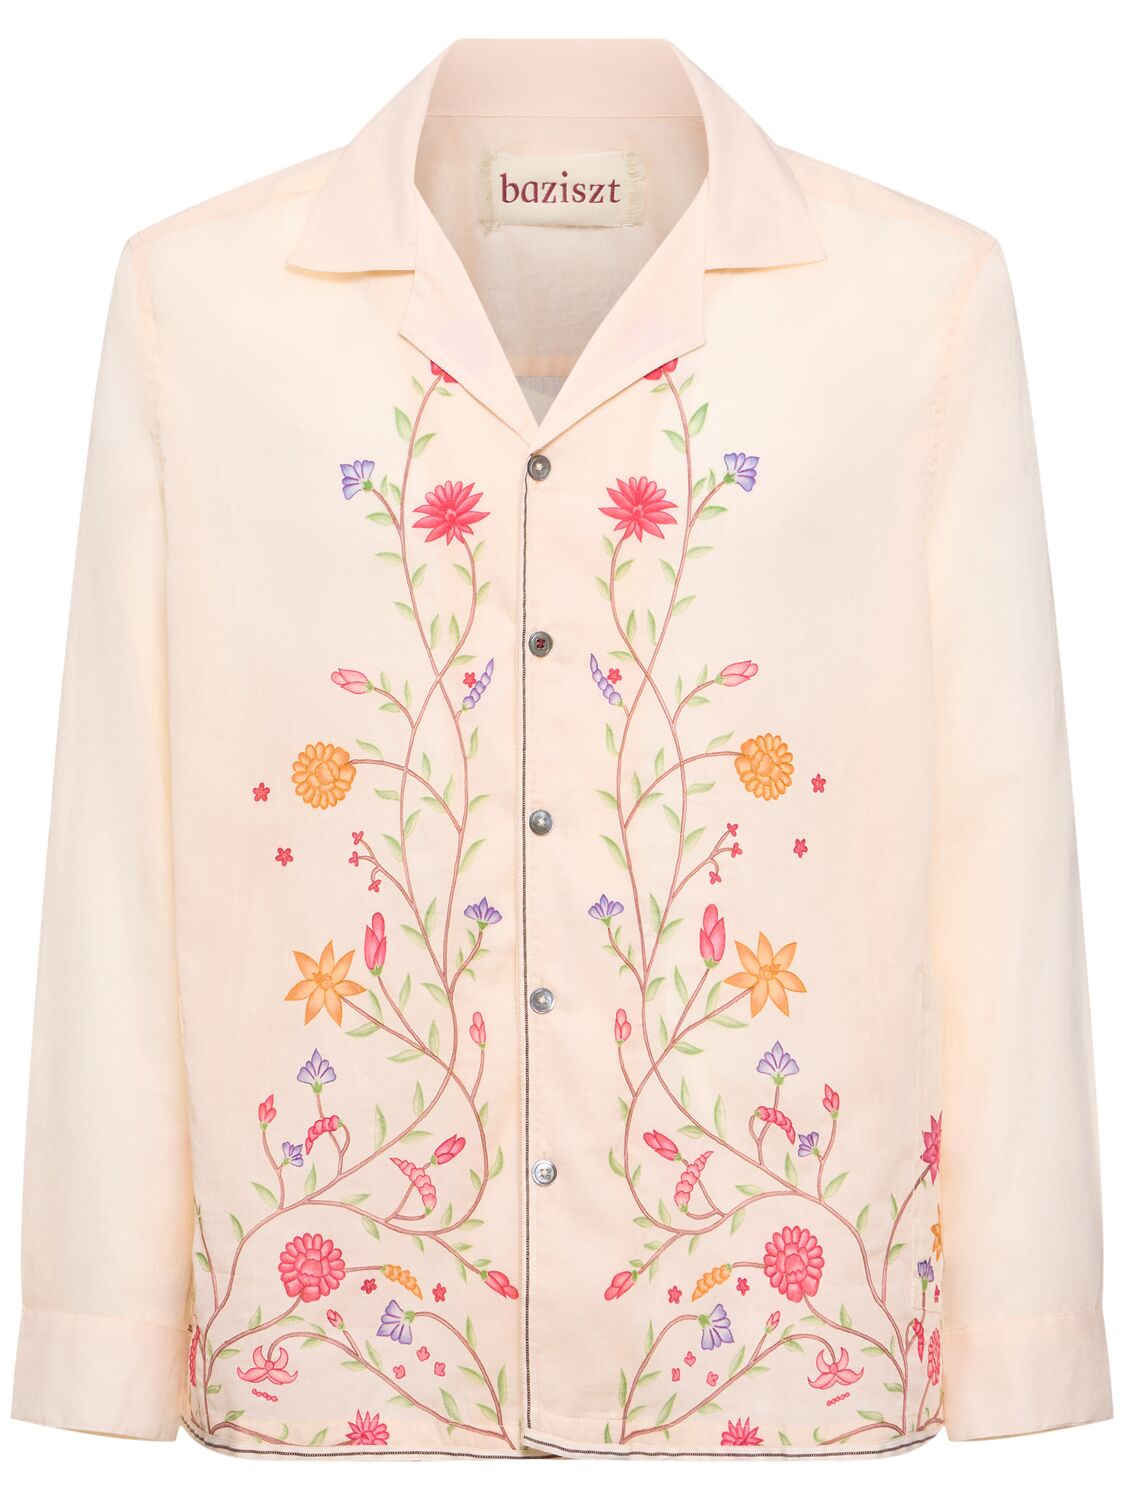 Baziszt Flower Embroidered Cotton Shirt In Beige